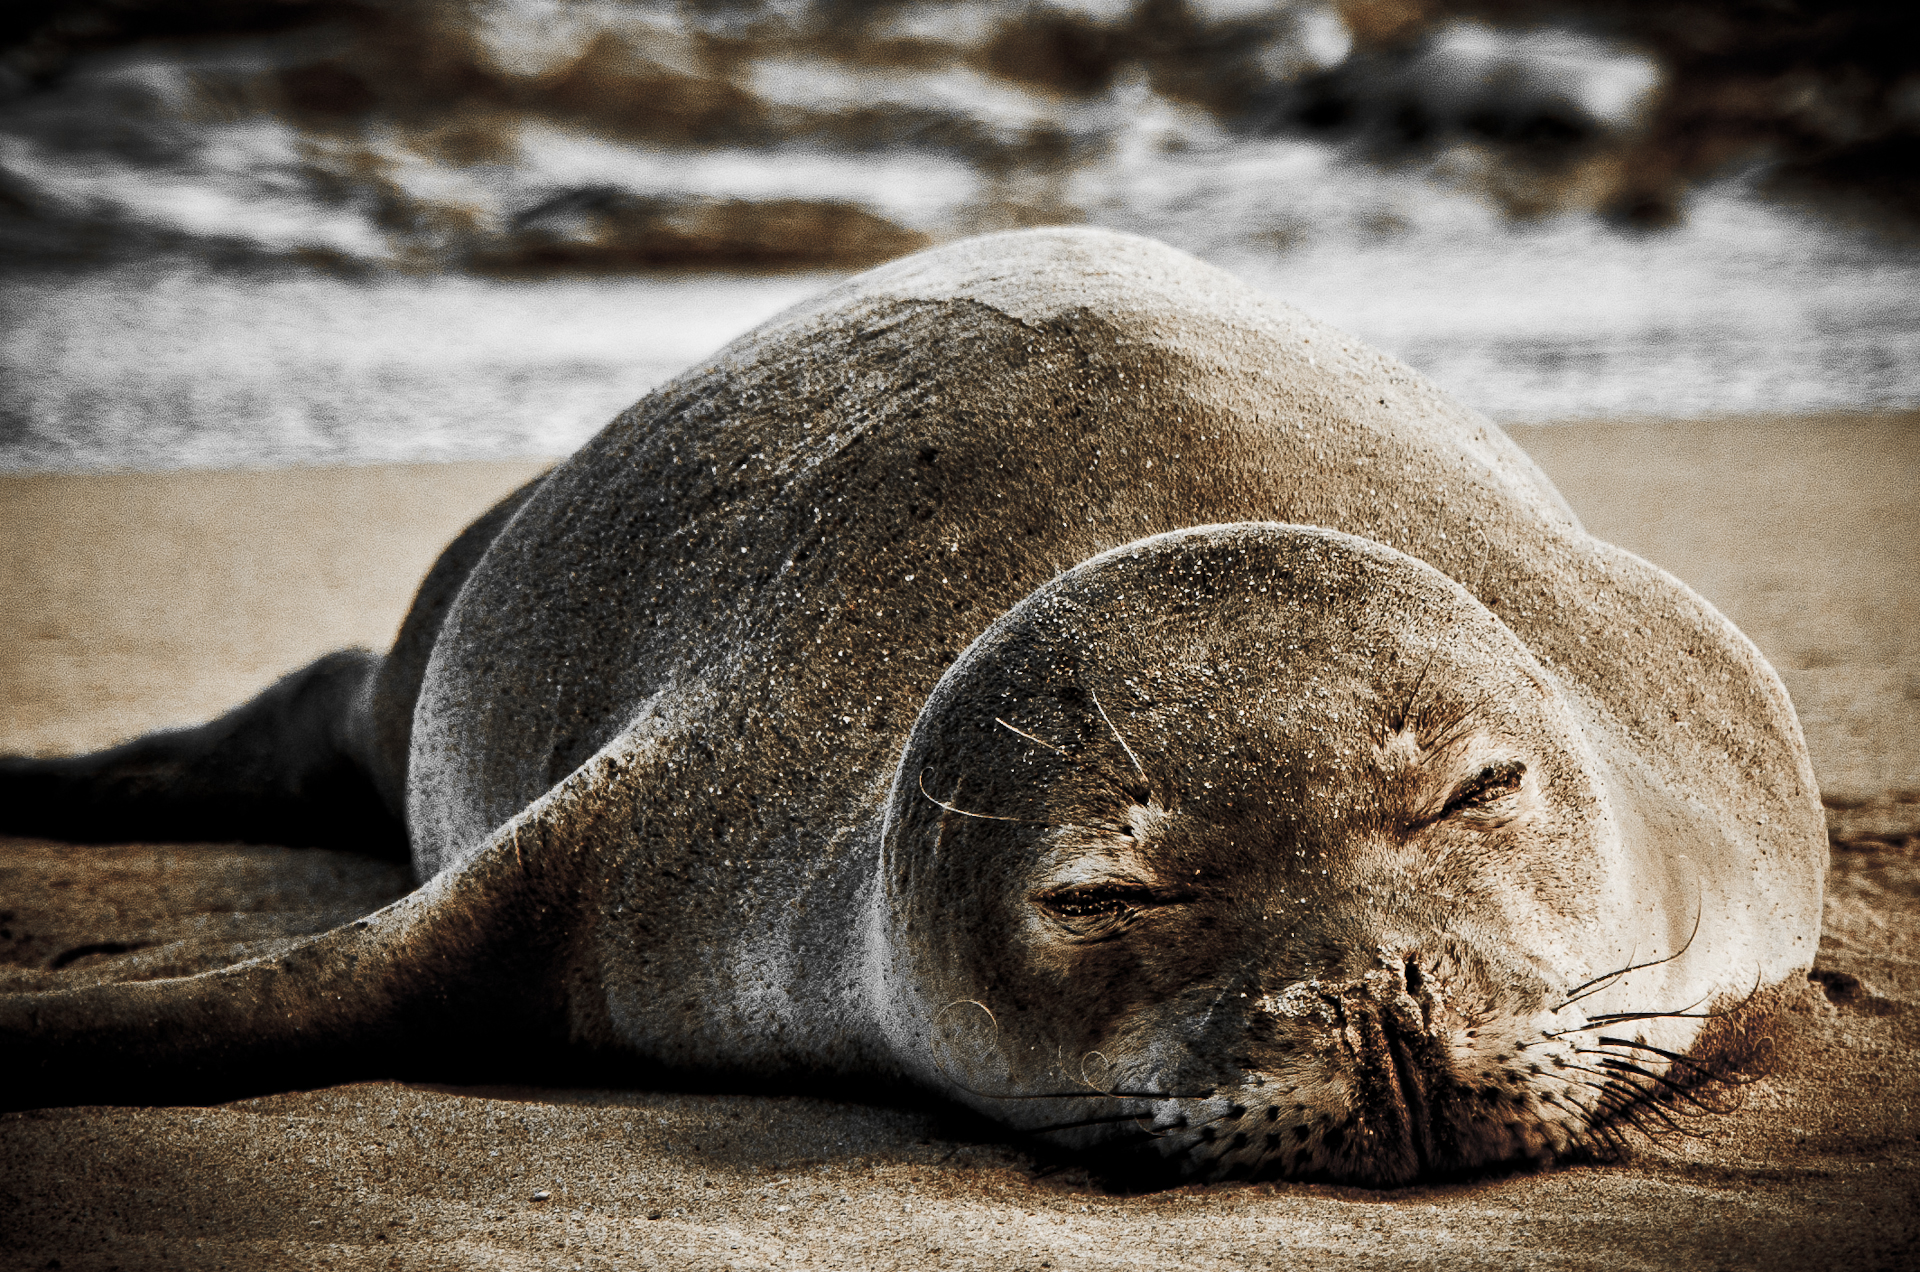 File:Sleeping Hawaiian Monk Seal (5639337229).jpg - Wikimedia Commons